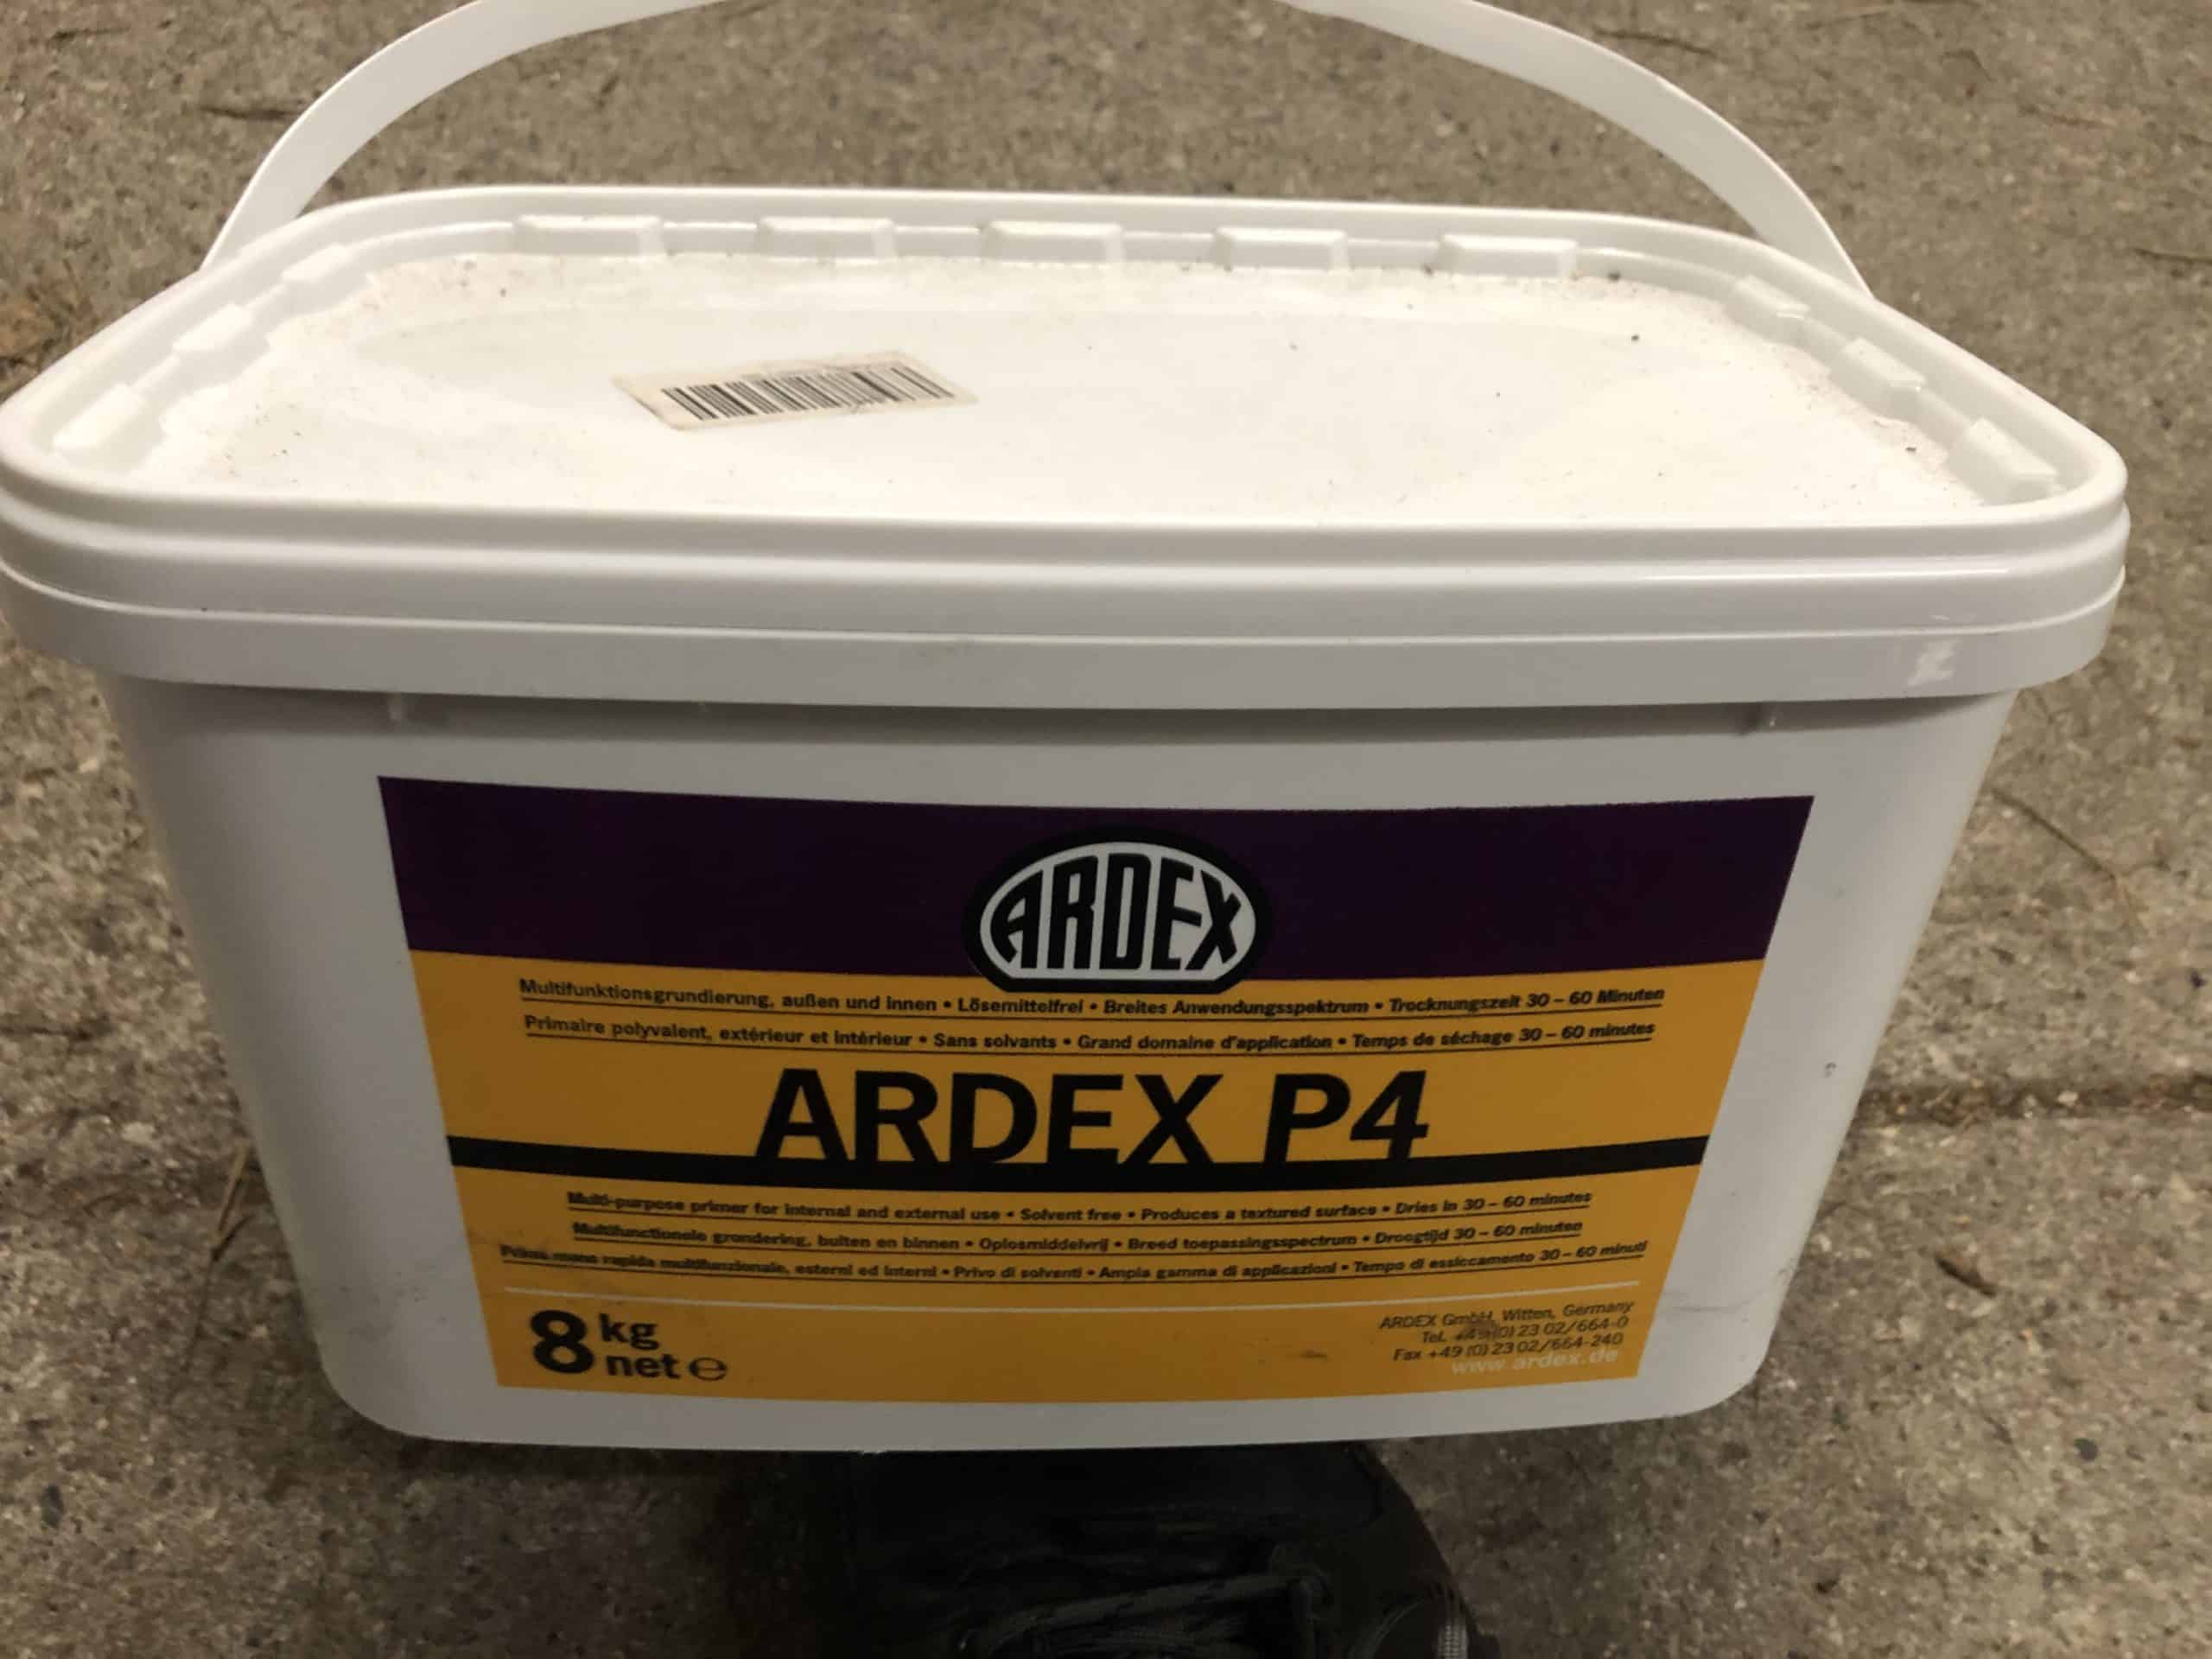 Ardex Multifunktionsgrundierung 8 kg